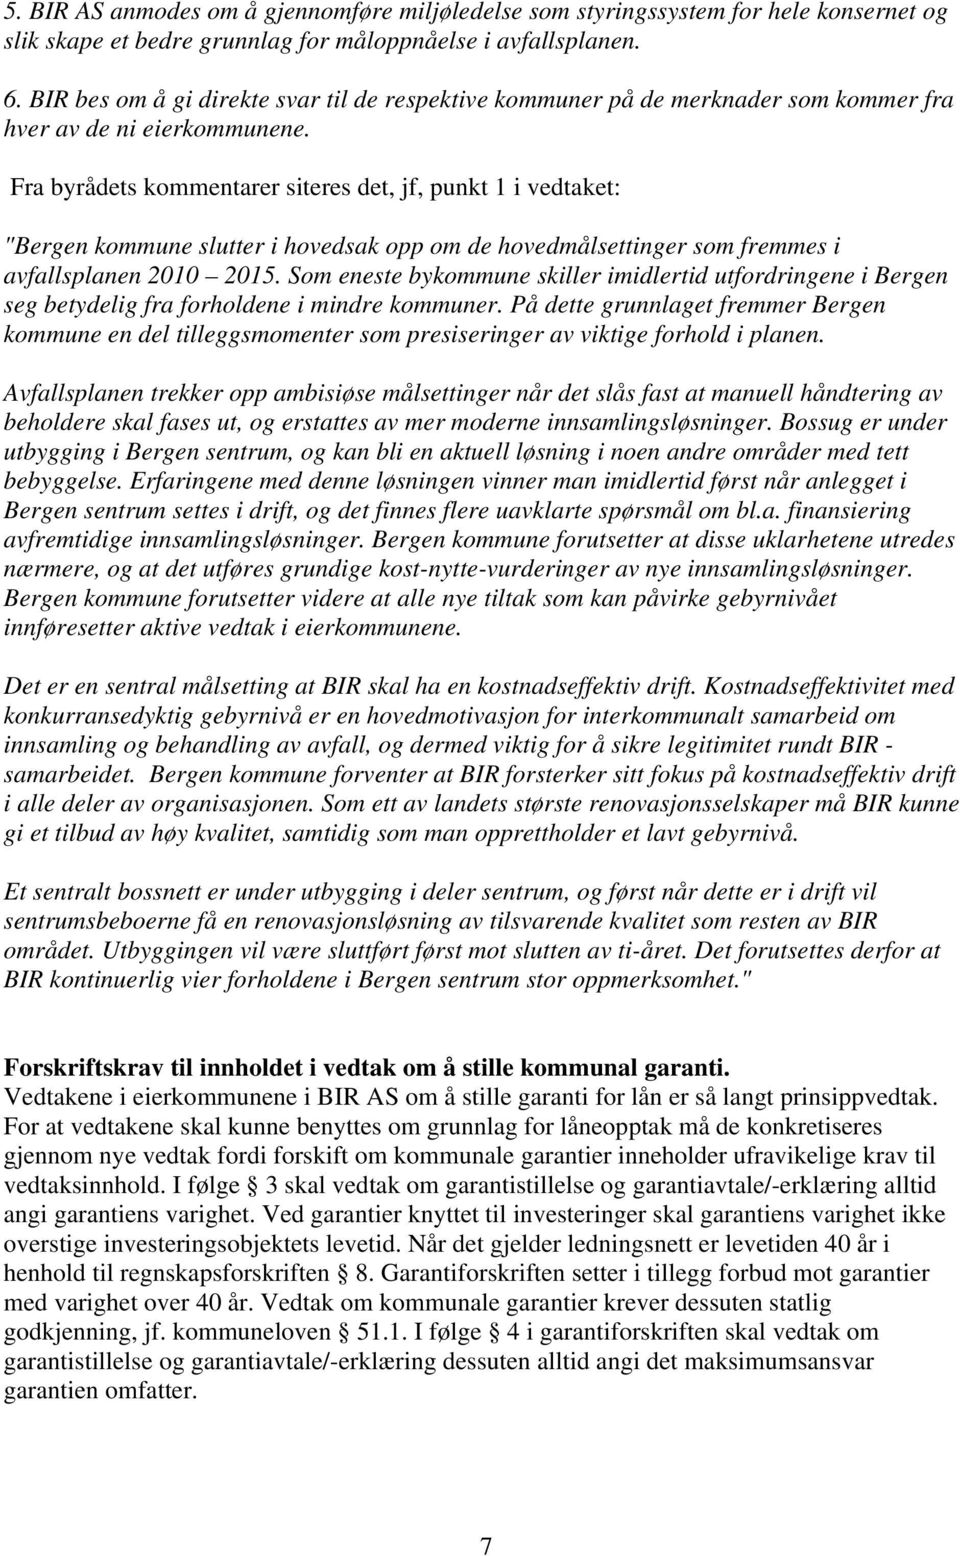 Fra byrådets kommentarer siteres det, jf, punkt 1 i vedtaket: "Bergen kommune slutter i hovedsak opp om de hovedmålsettinger som fremmes i avfallsplanen 2010 2015.